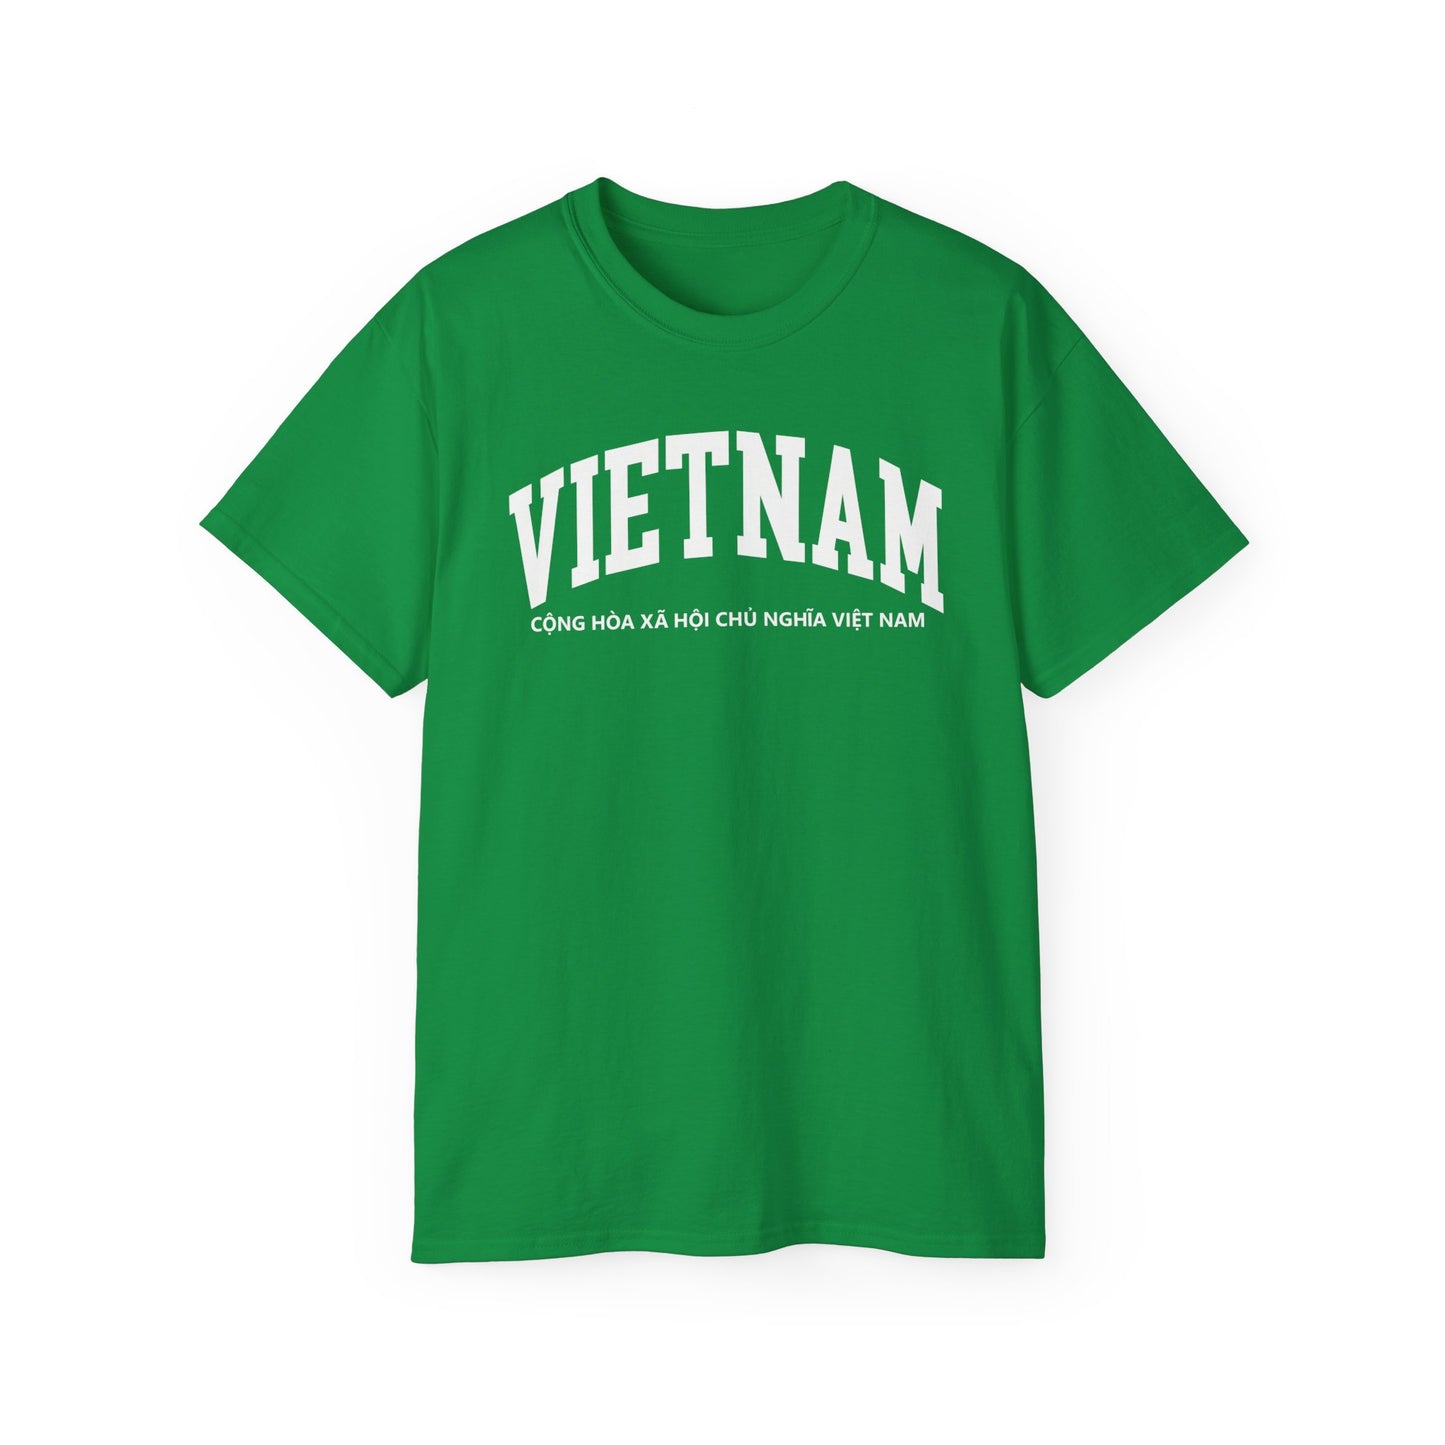 Vietnam Tee